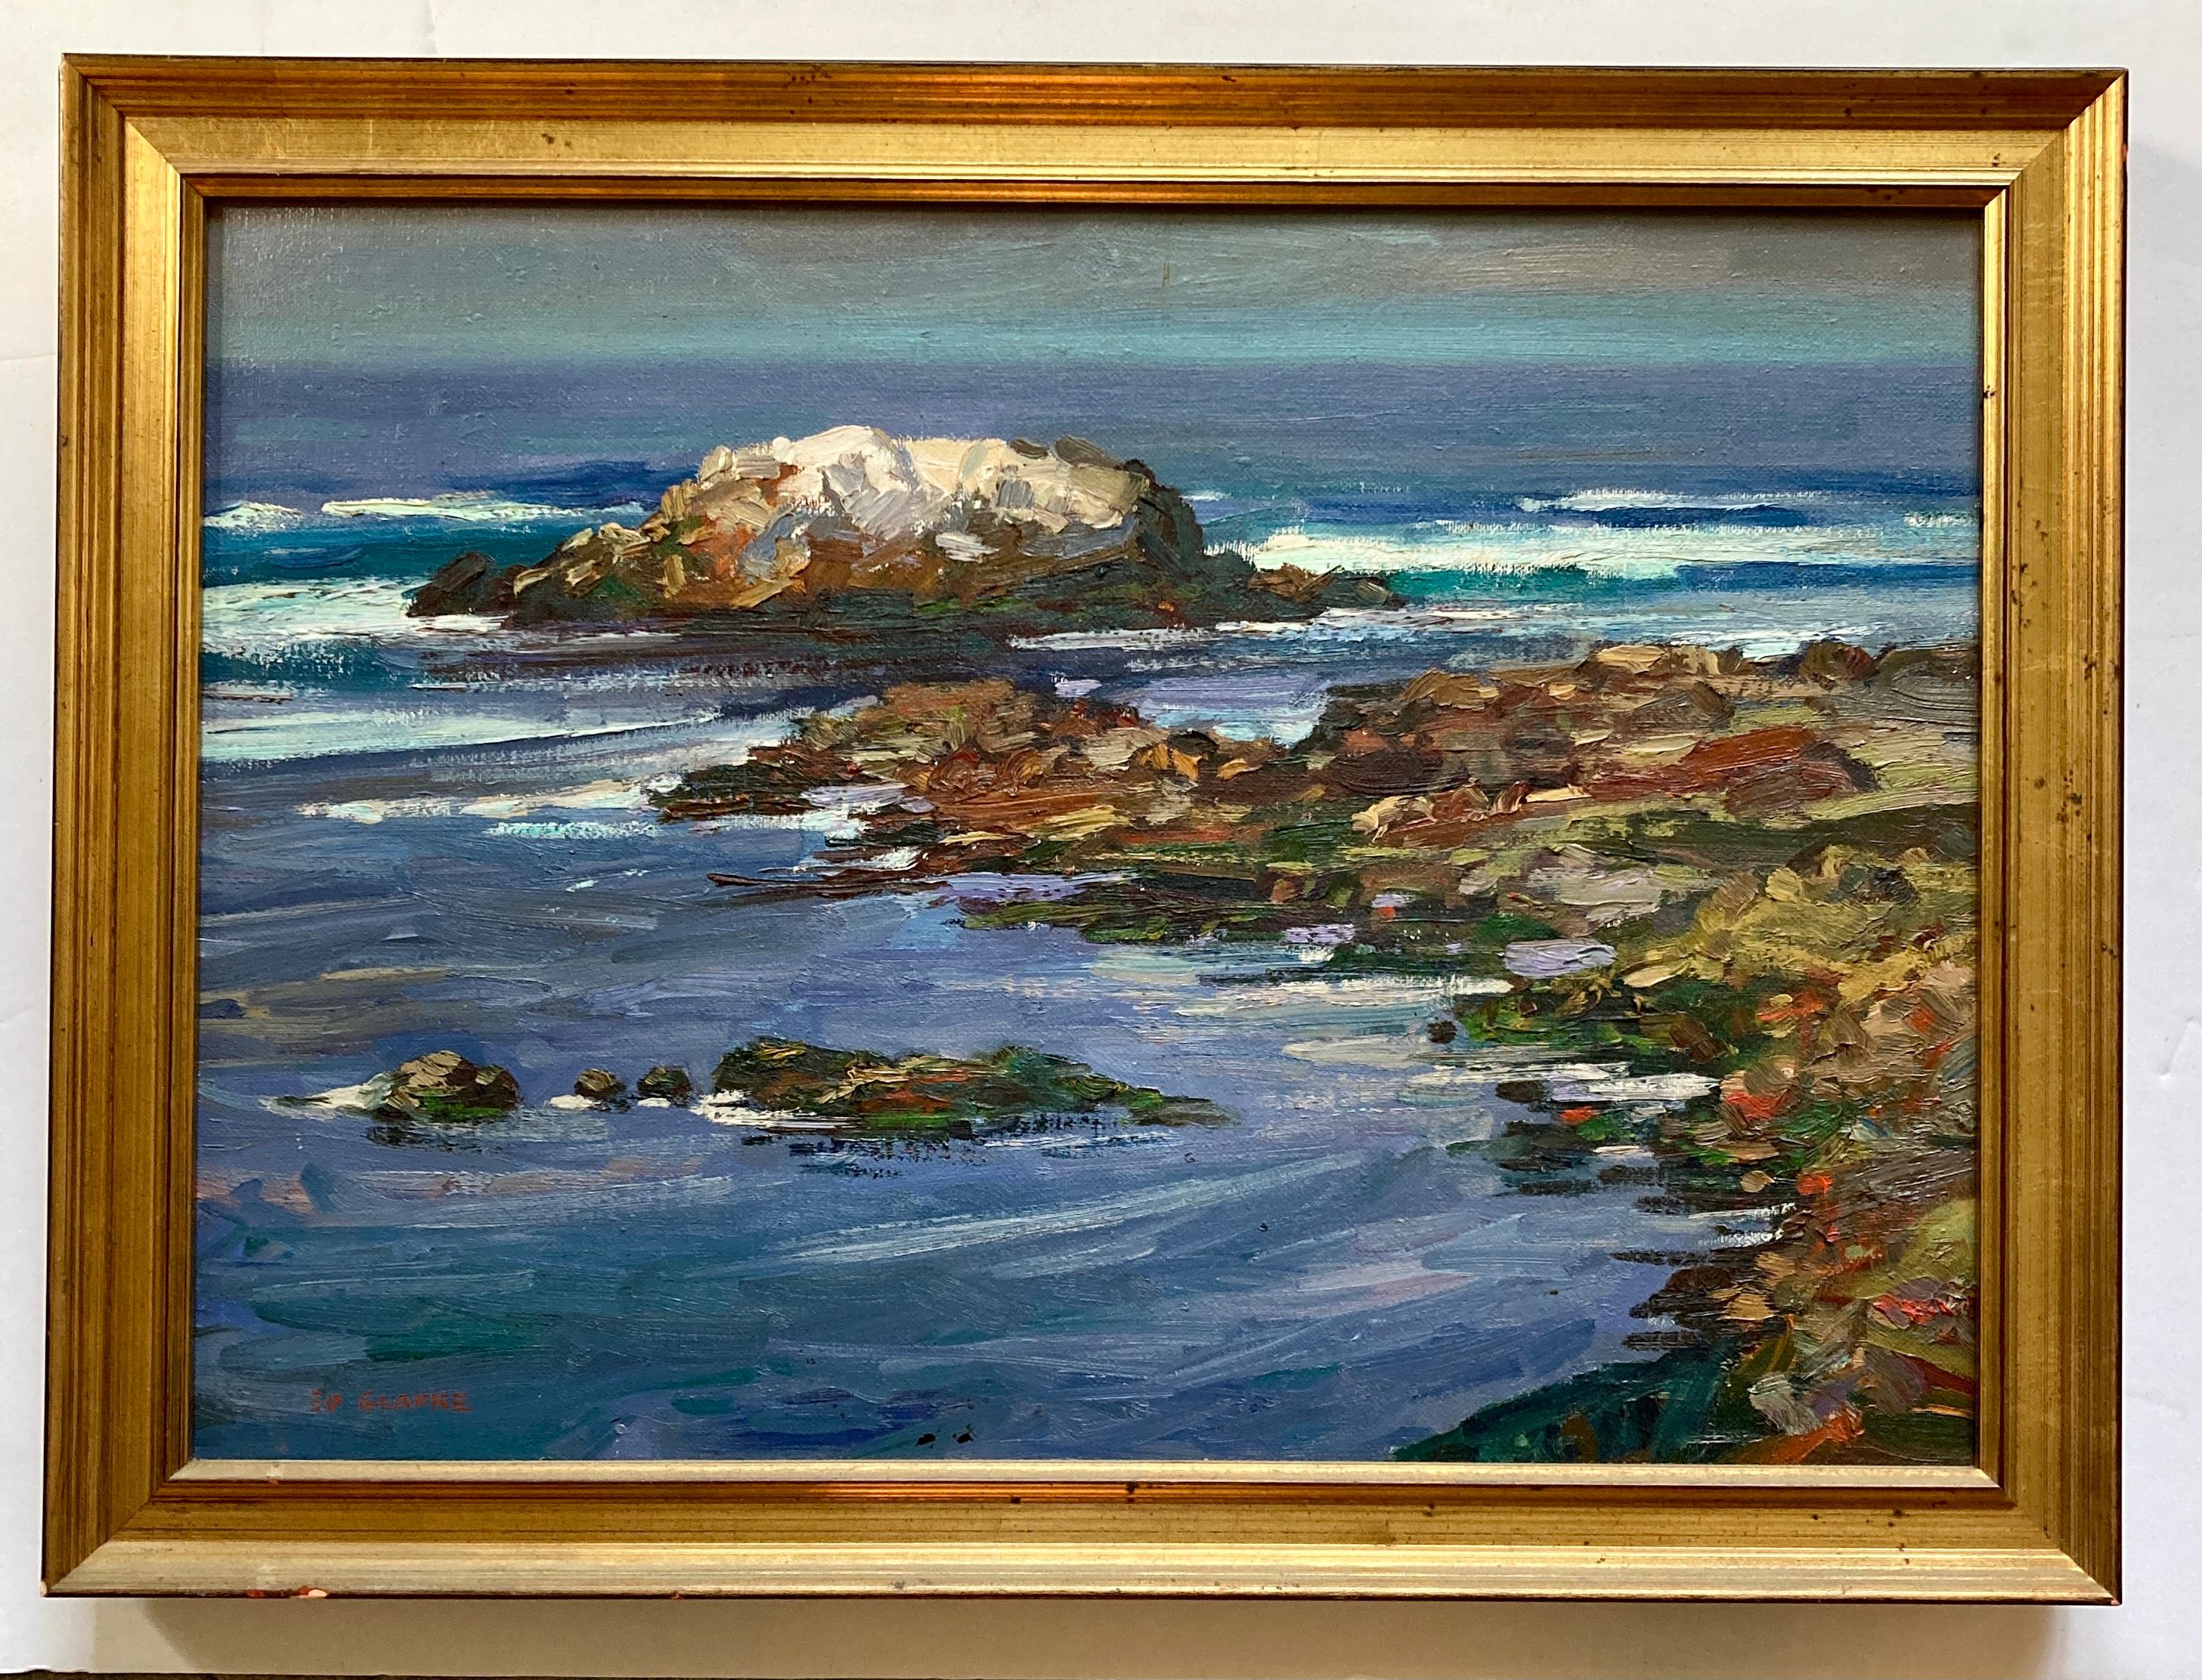 Impressionistisches Meereslandschaftsgemälde, Edward Glafke, „Vogelstein“ Pebble Beach